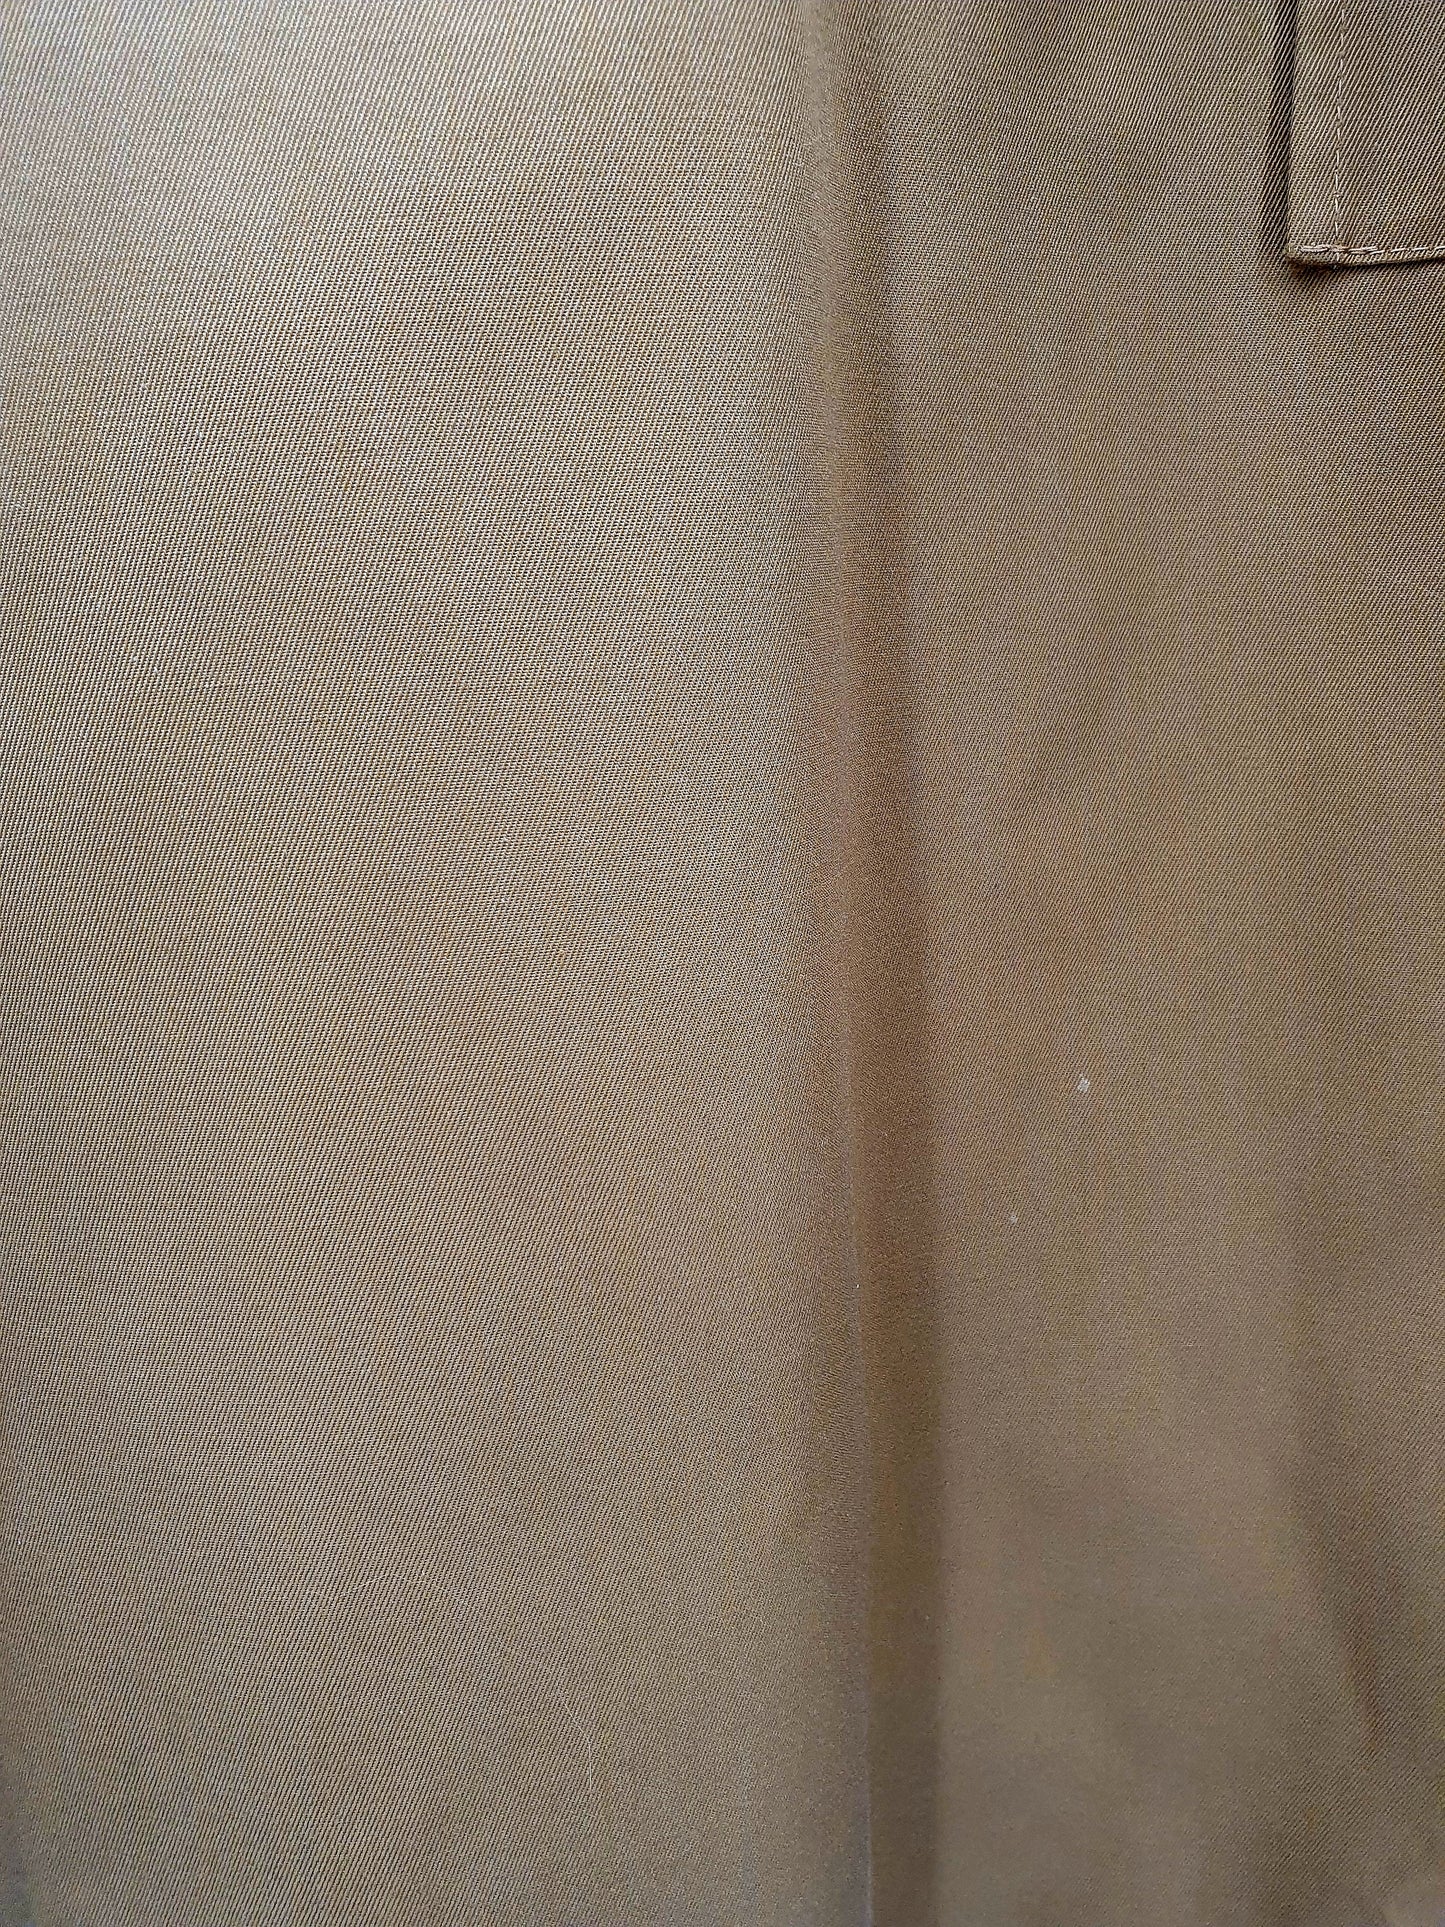 Jalas-Vaate, miesten vaaleanruskea trenssitakki, 70-luku, koko L(XL)